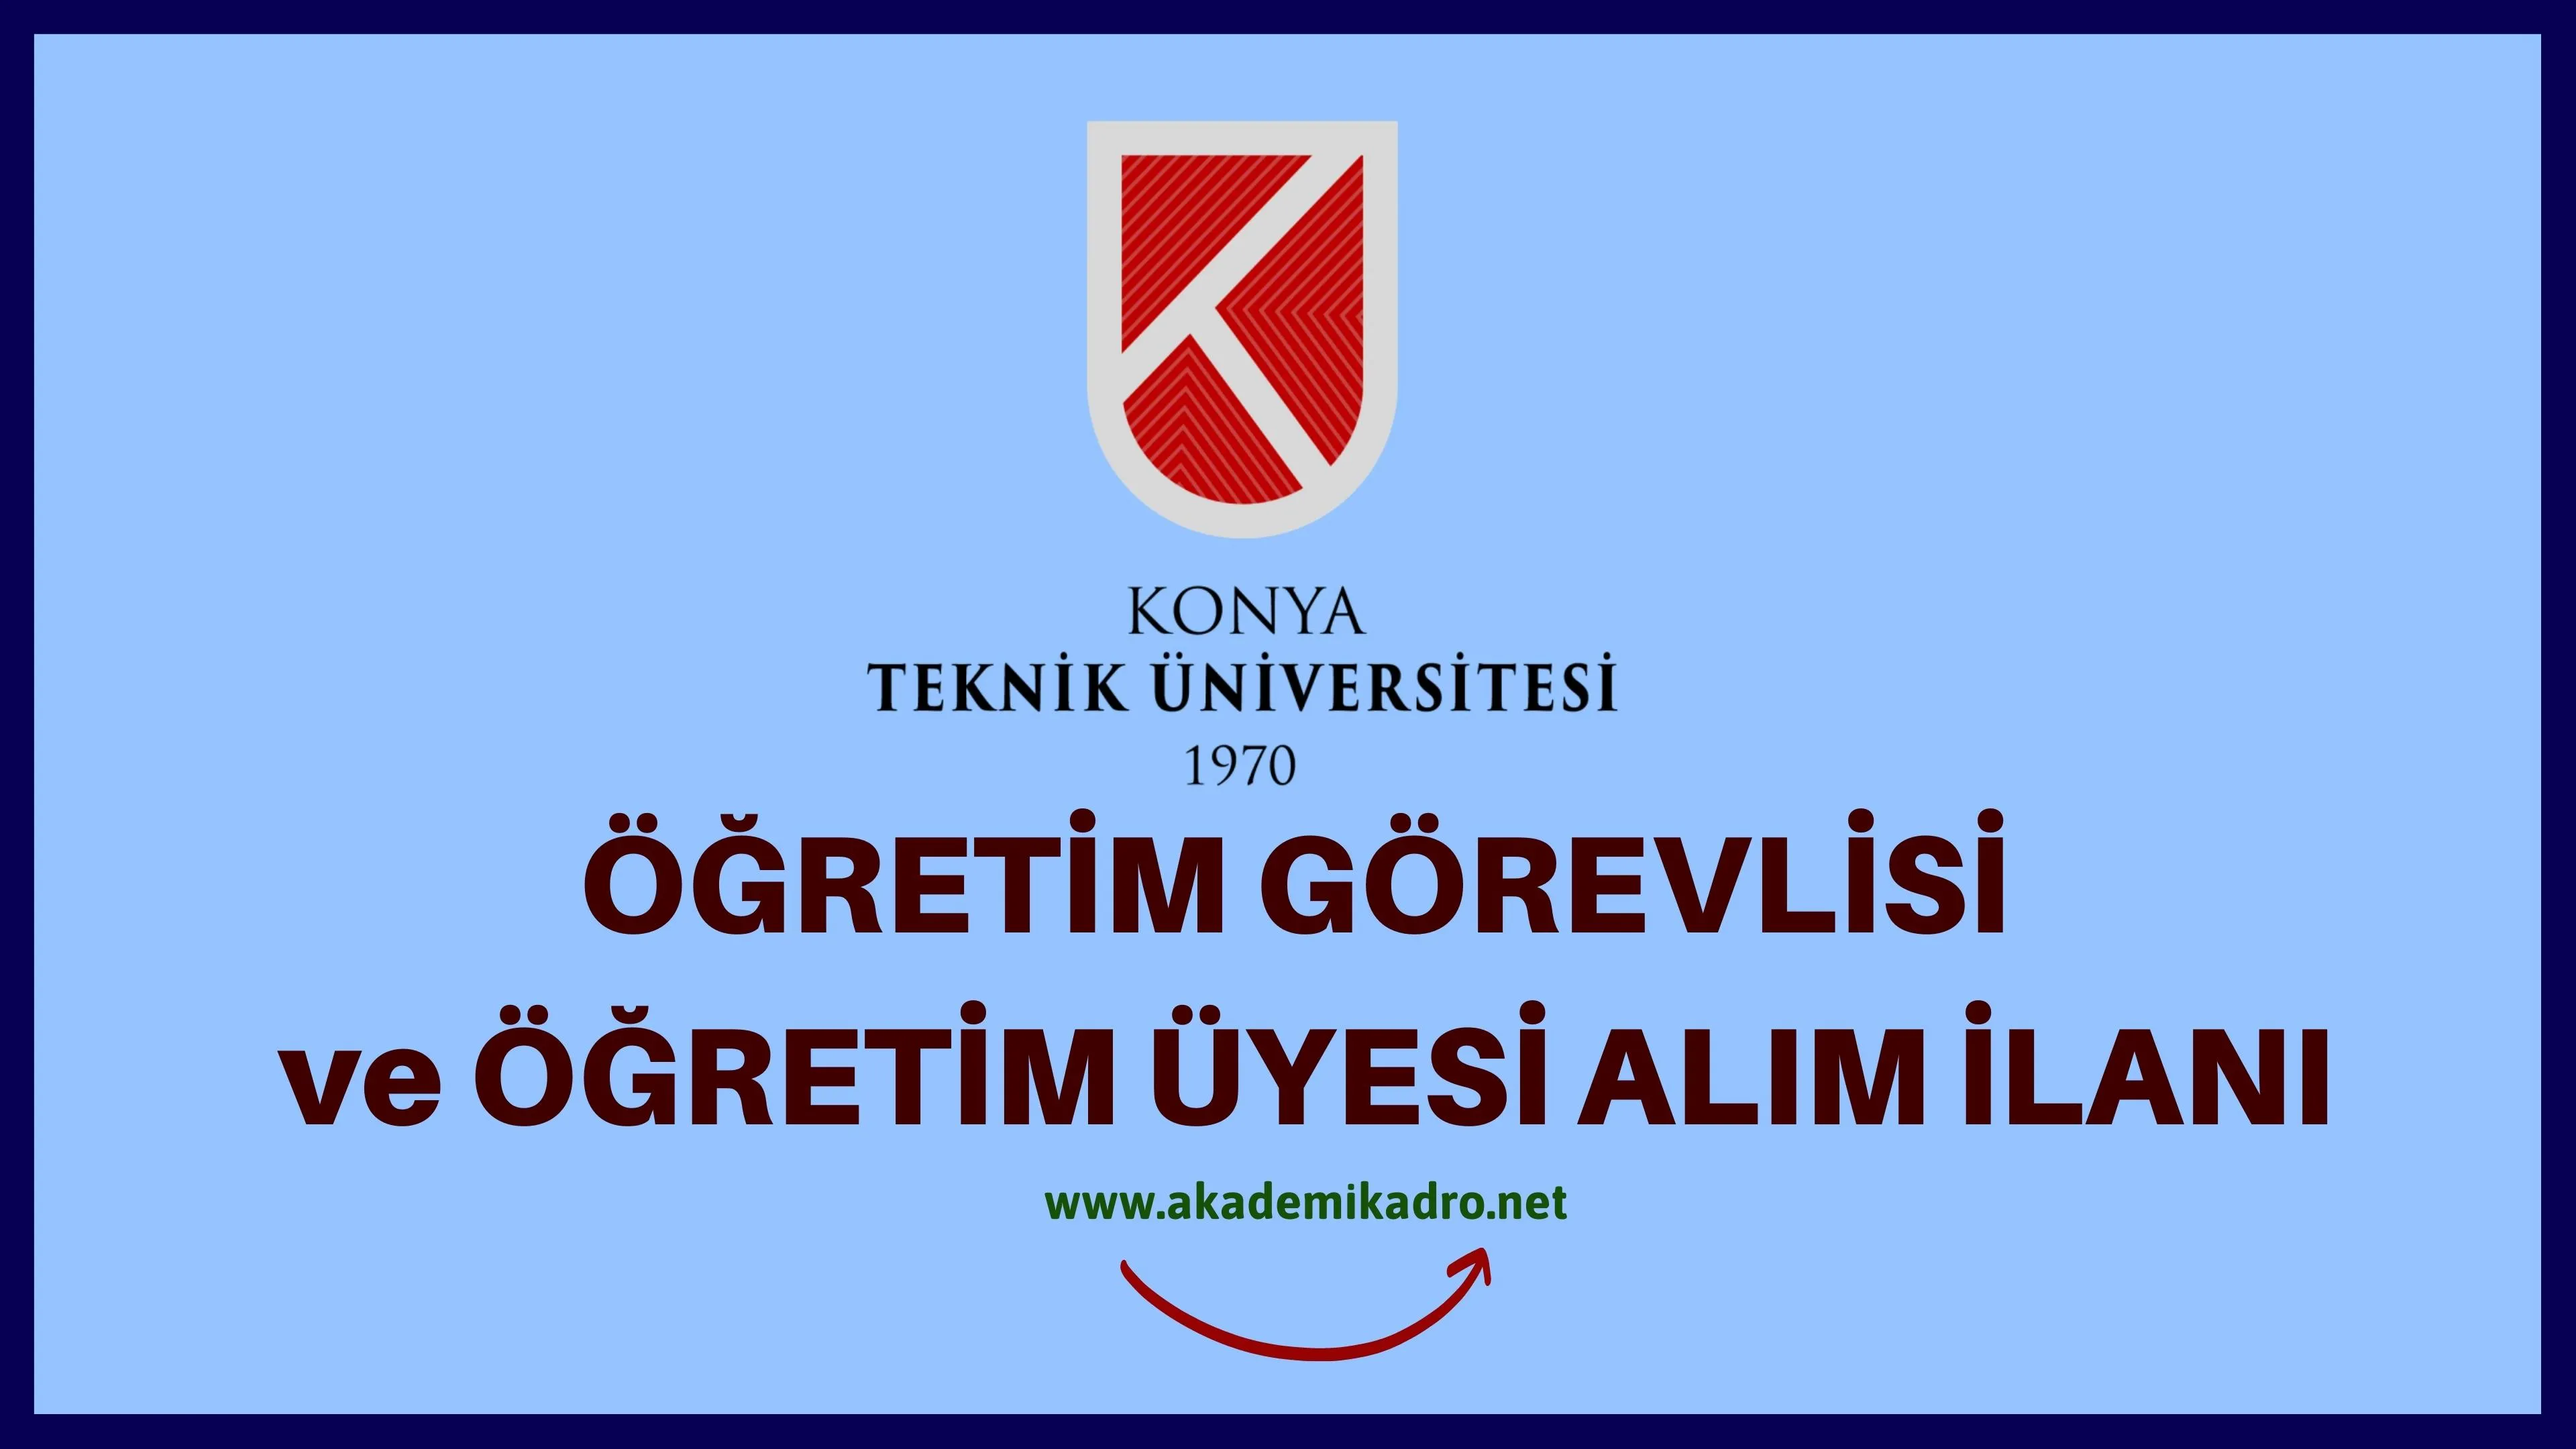 Konya Teknik Üniversitesi çeşitli branşlarda 5 Öğretim görevlisi alacak.